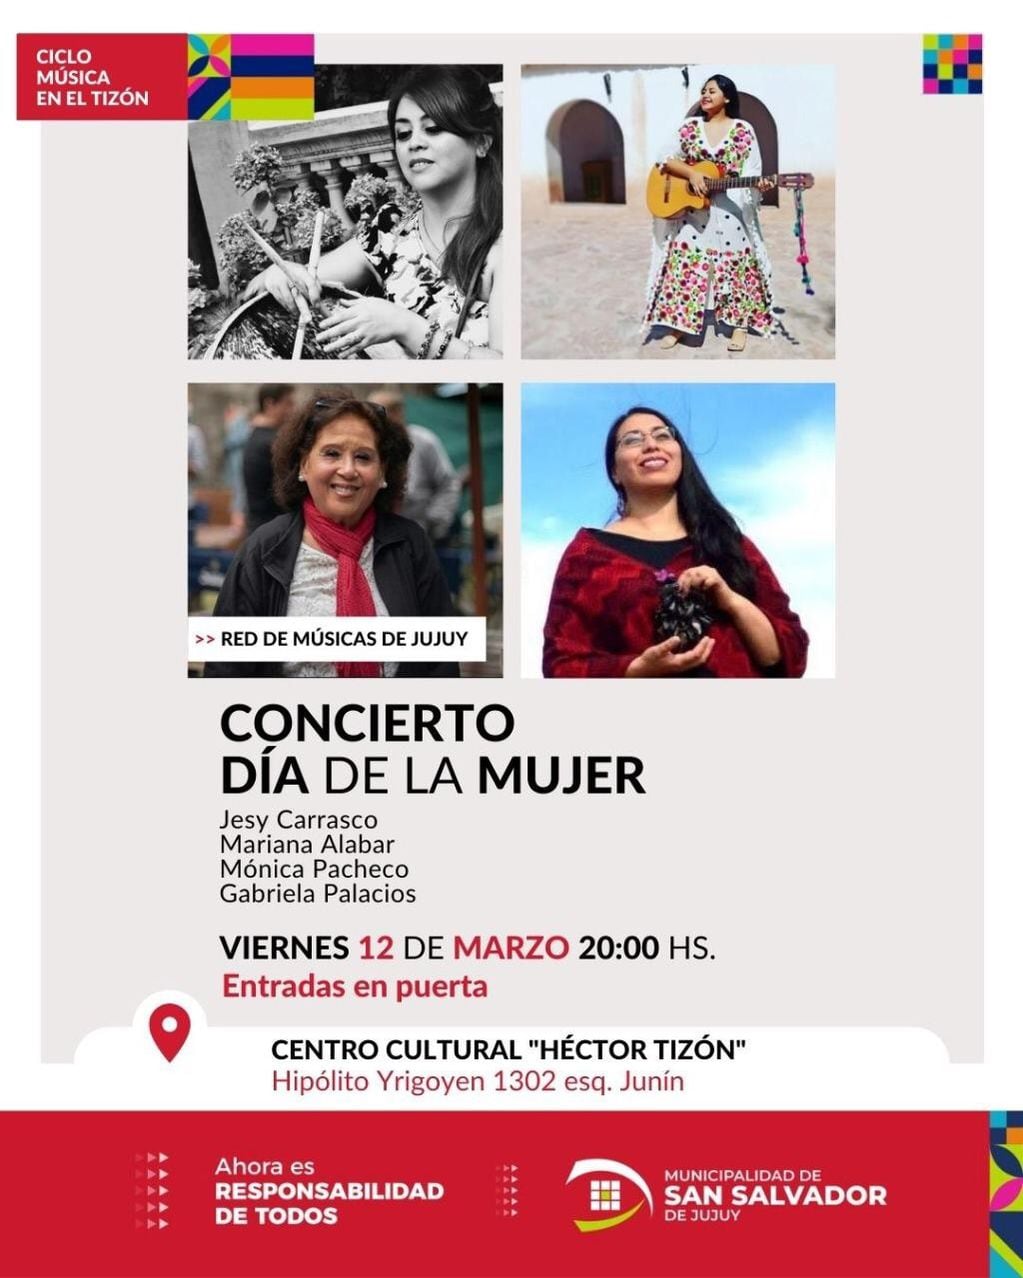 La propuesta del Concierto por el Día de la Mujer, anunciado por la Municipalidad de san Salvador de Jujuy.